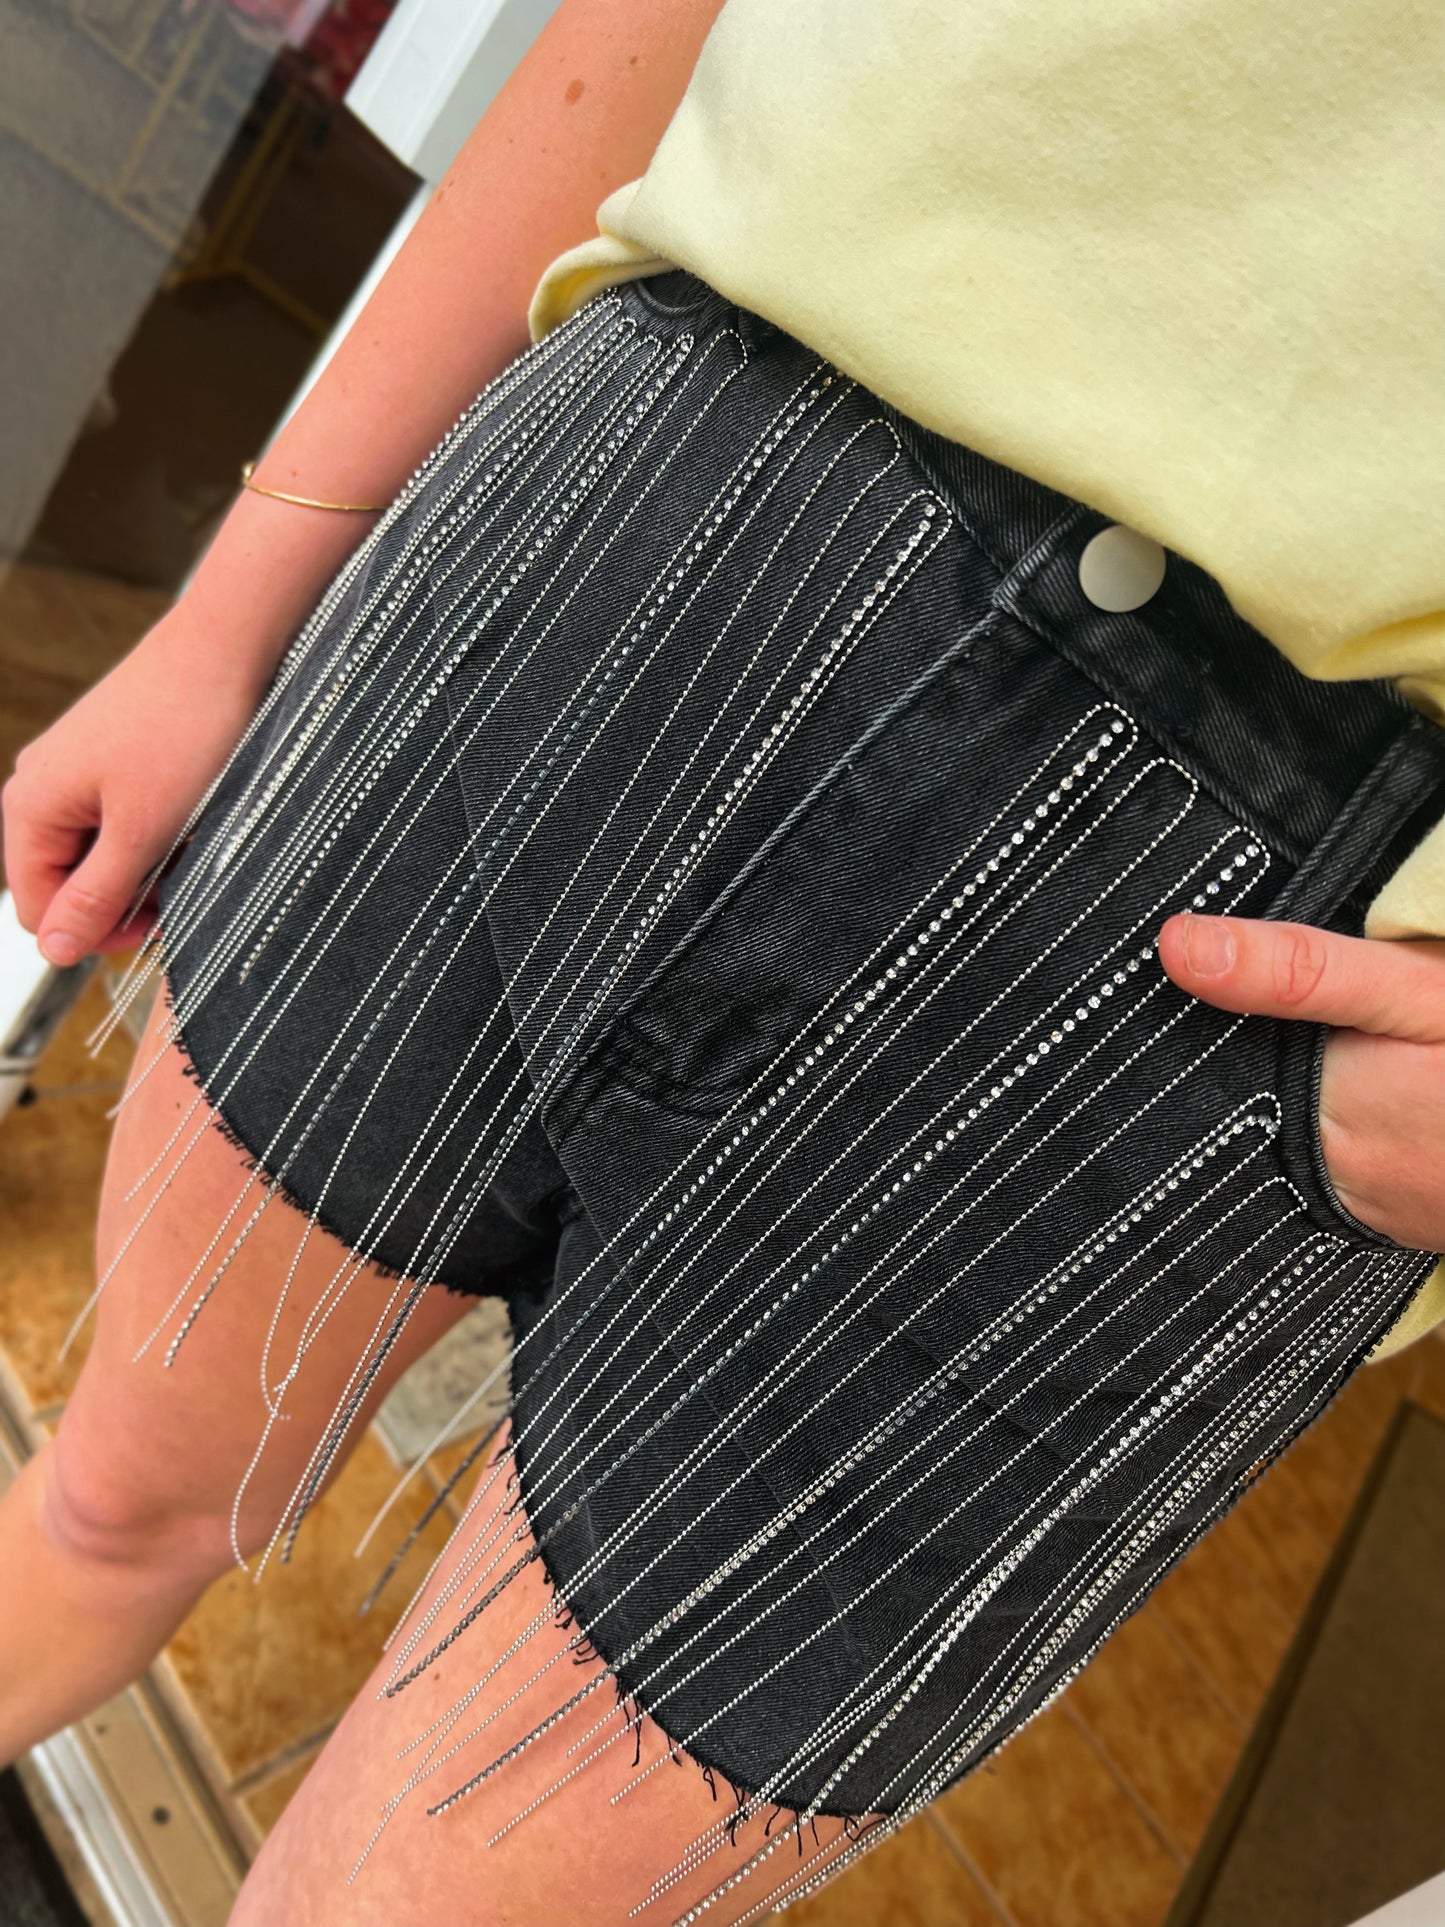 Charcoal Denim Shorts With Rhinestone Fringe Details